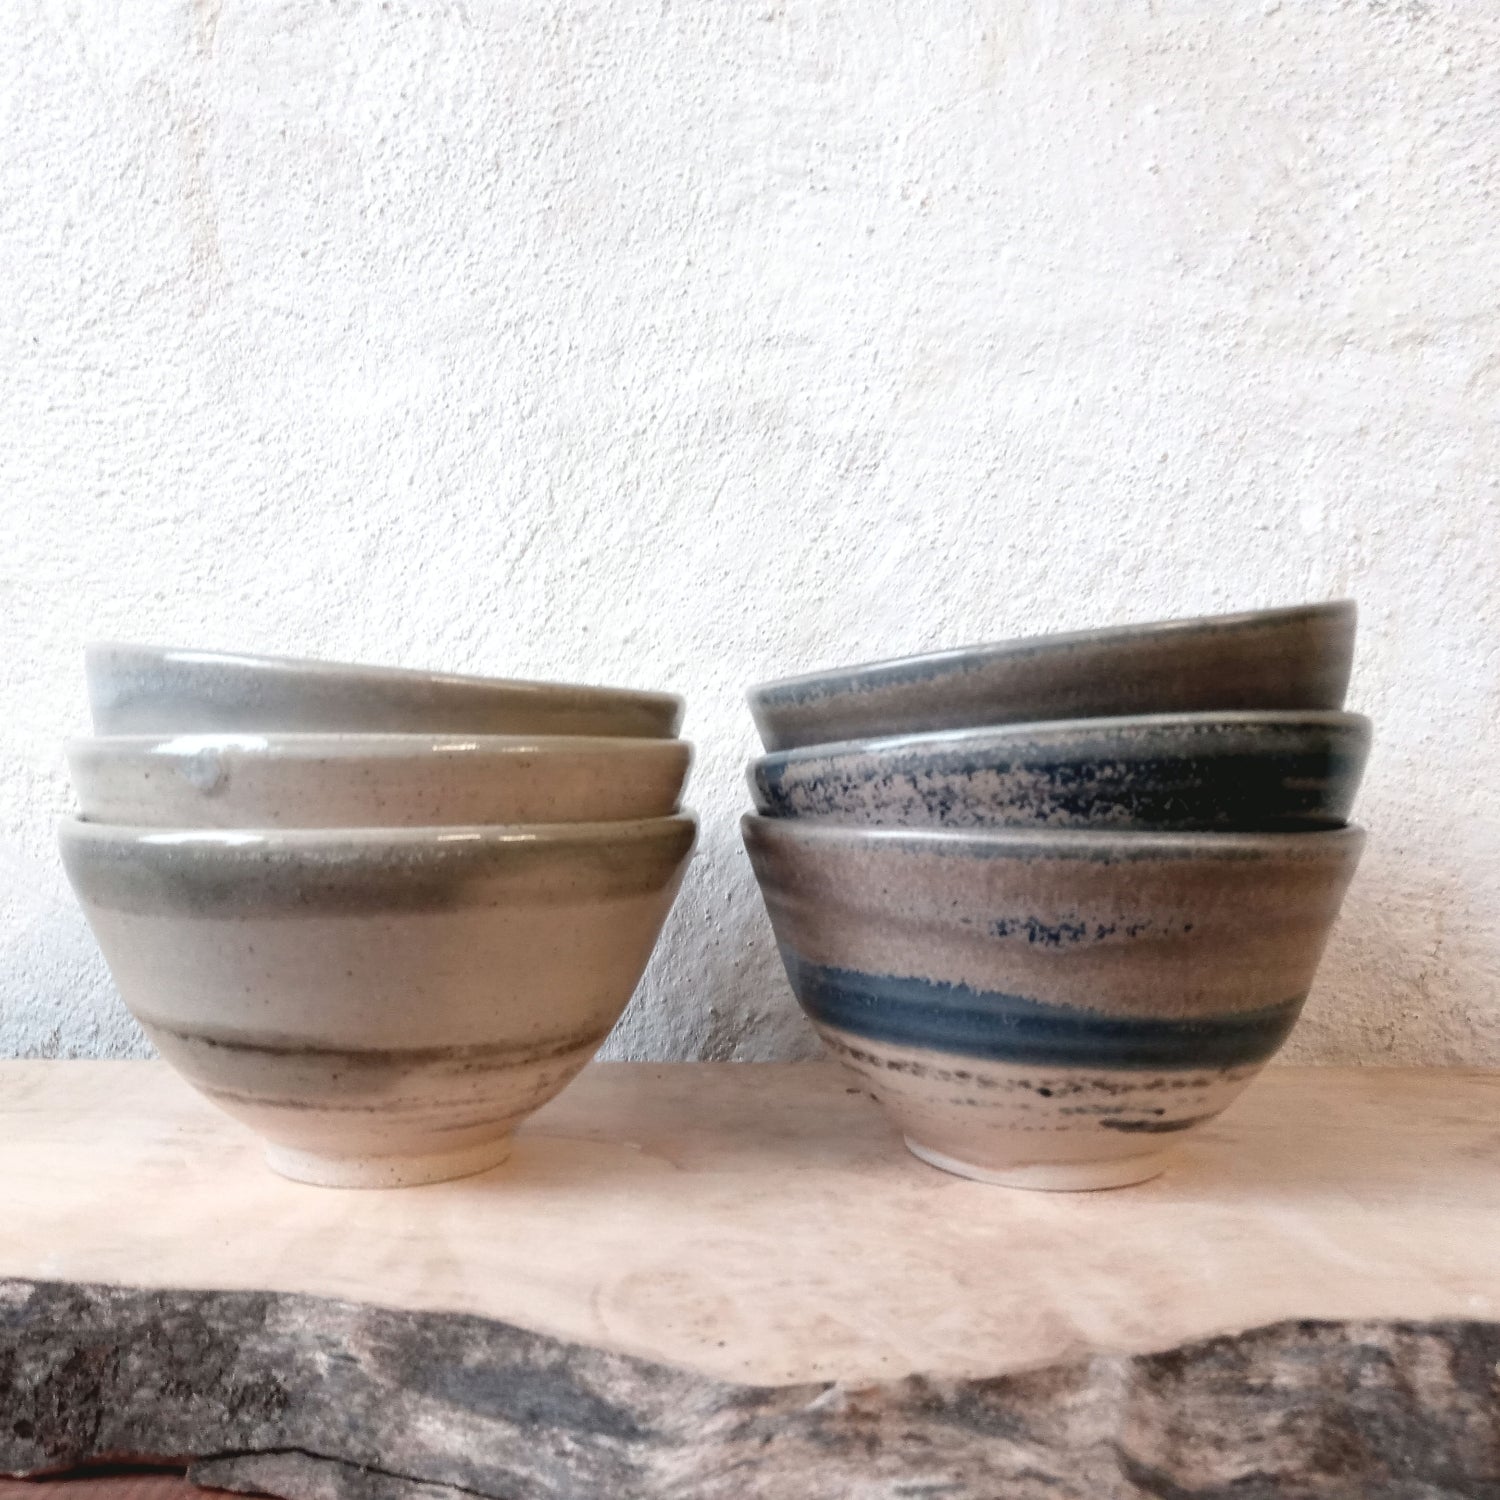 Small bowls - Made Scotland